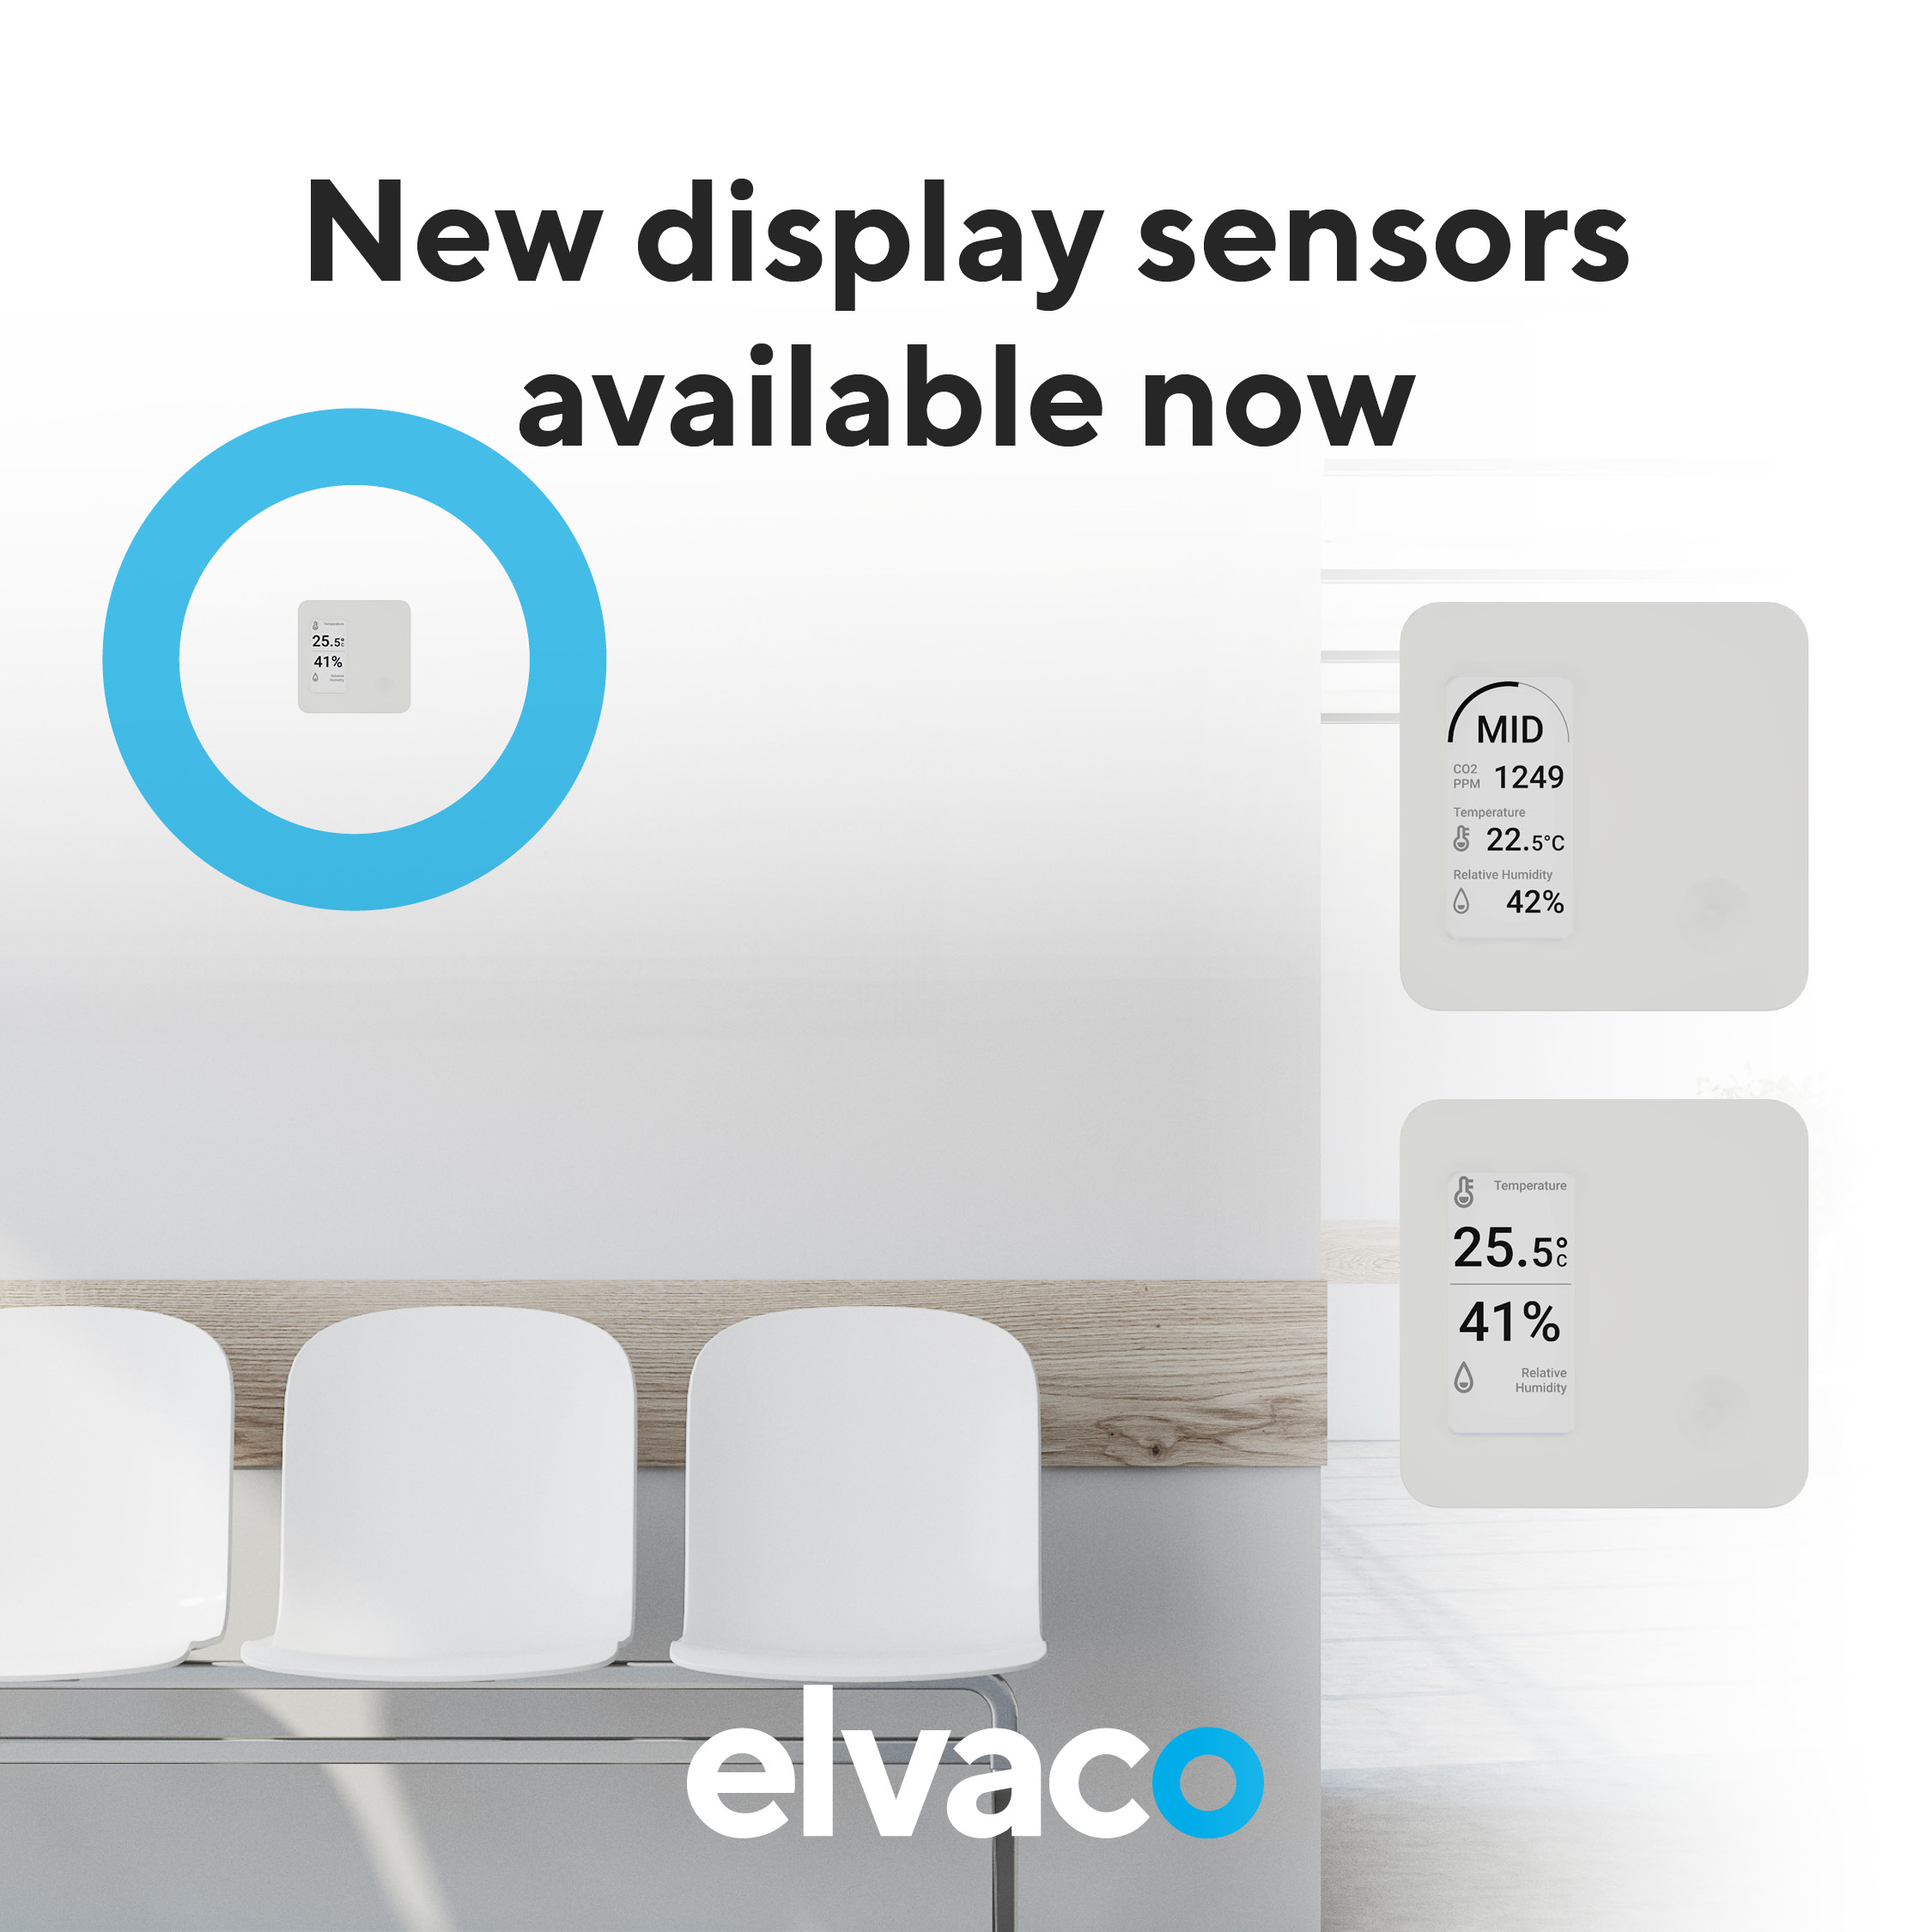 Nu tillgängliga - nya LoRaWAN-sensorer med display